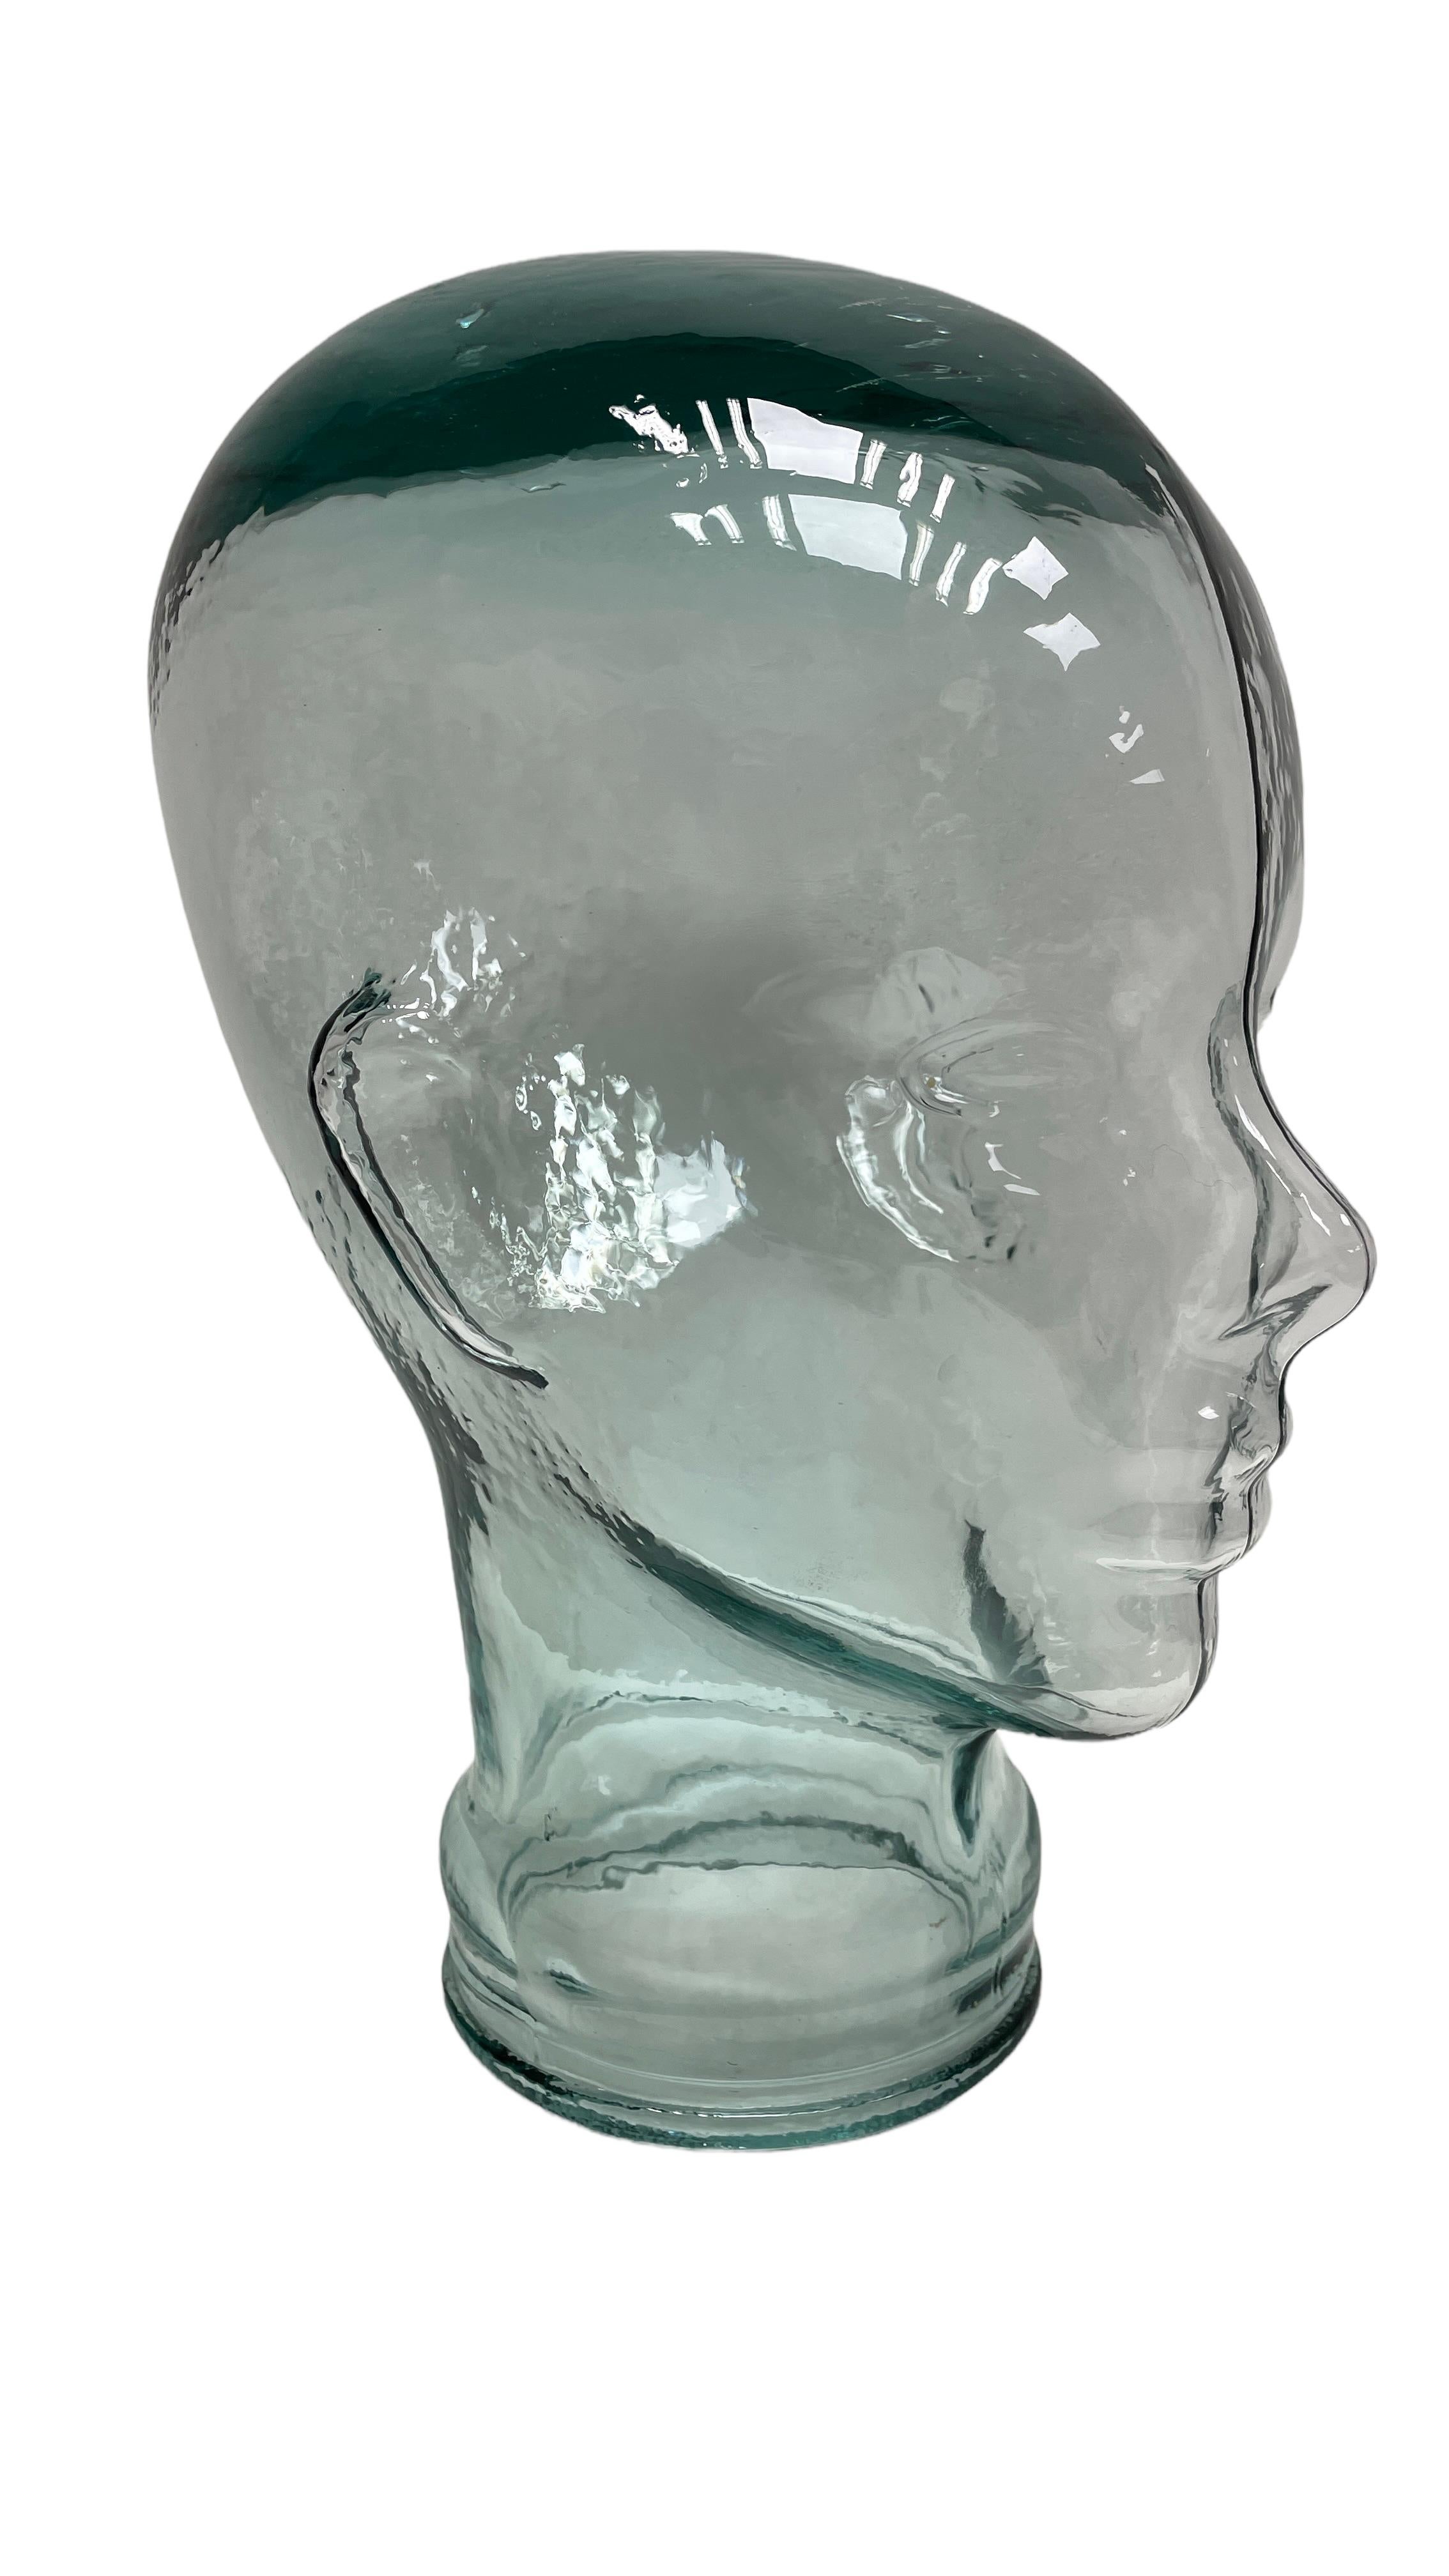 Magnifique tête en verre grandeur nature d'une couleur transparente unique. Trouvé dans une vente immobilière à Vienne en Autriche. Parfait état. Un ajout parfait à l'intérieur, un accessoire photo, un présentoir ou un support pour écouteurs. Un bel